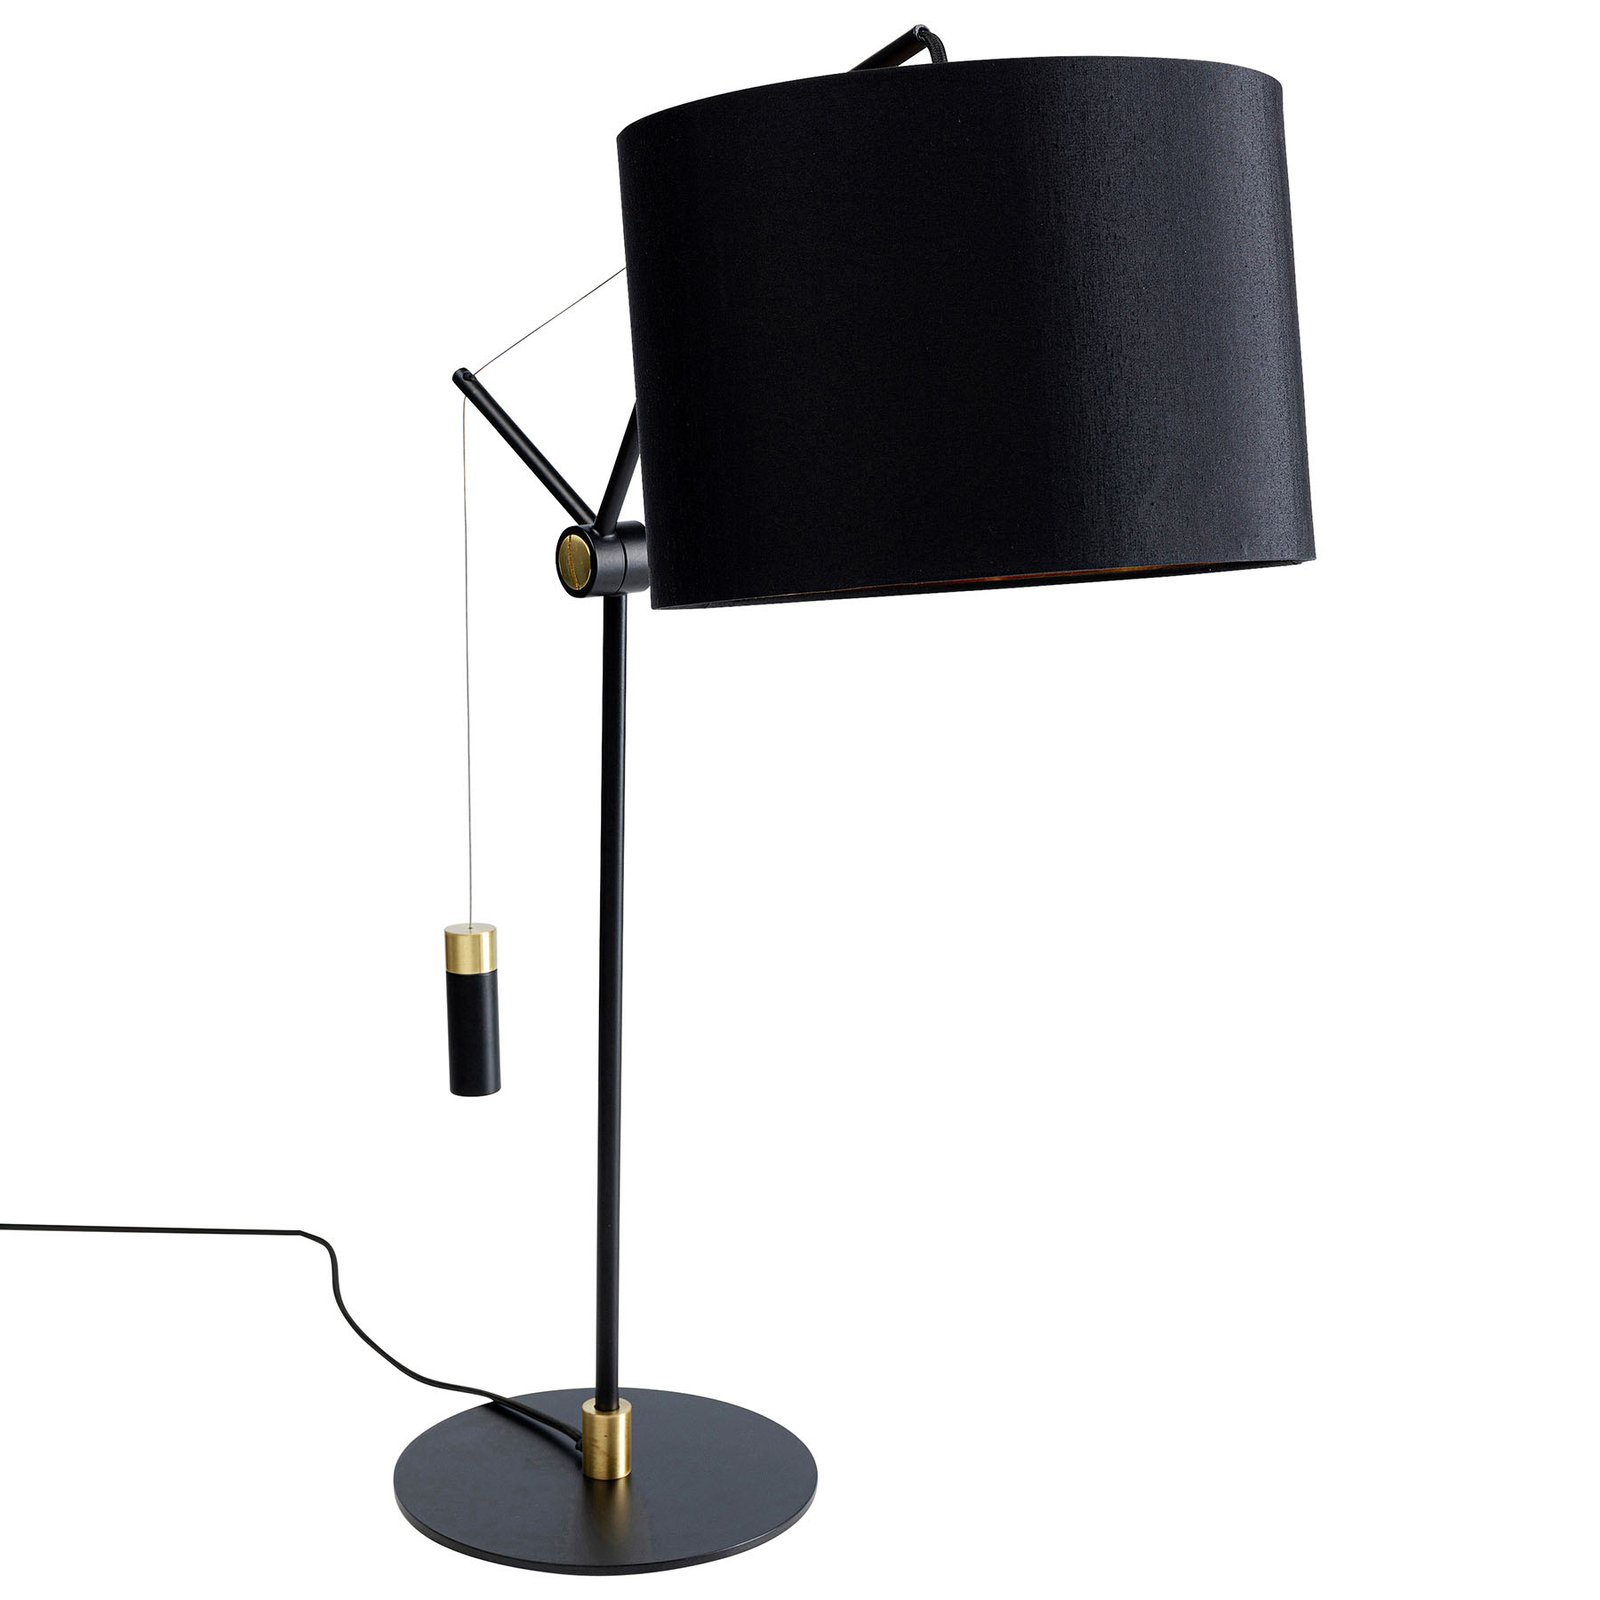 KAREN Salotto lámpara de mesa, regulable en altura